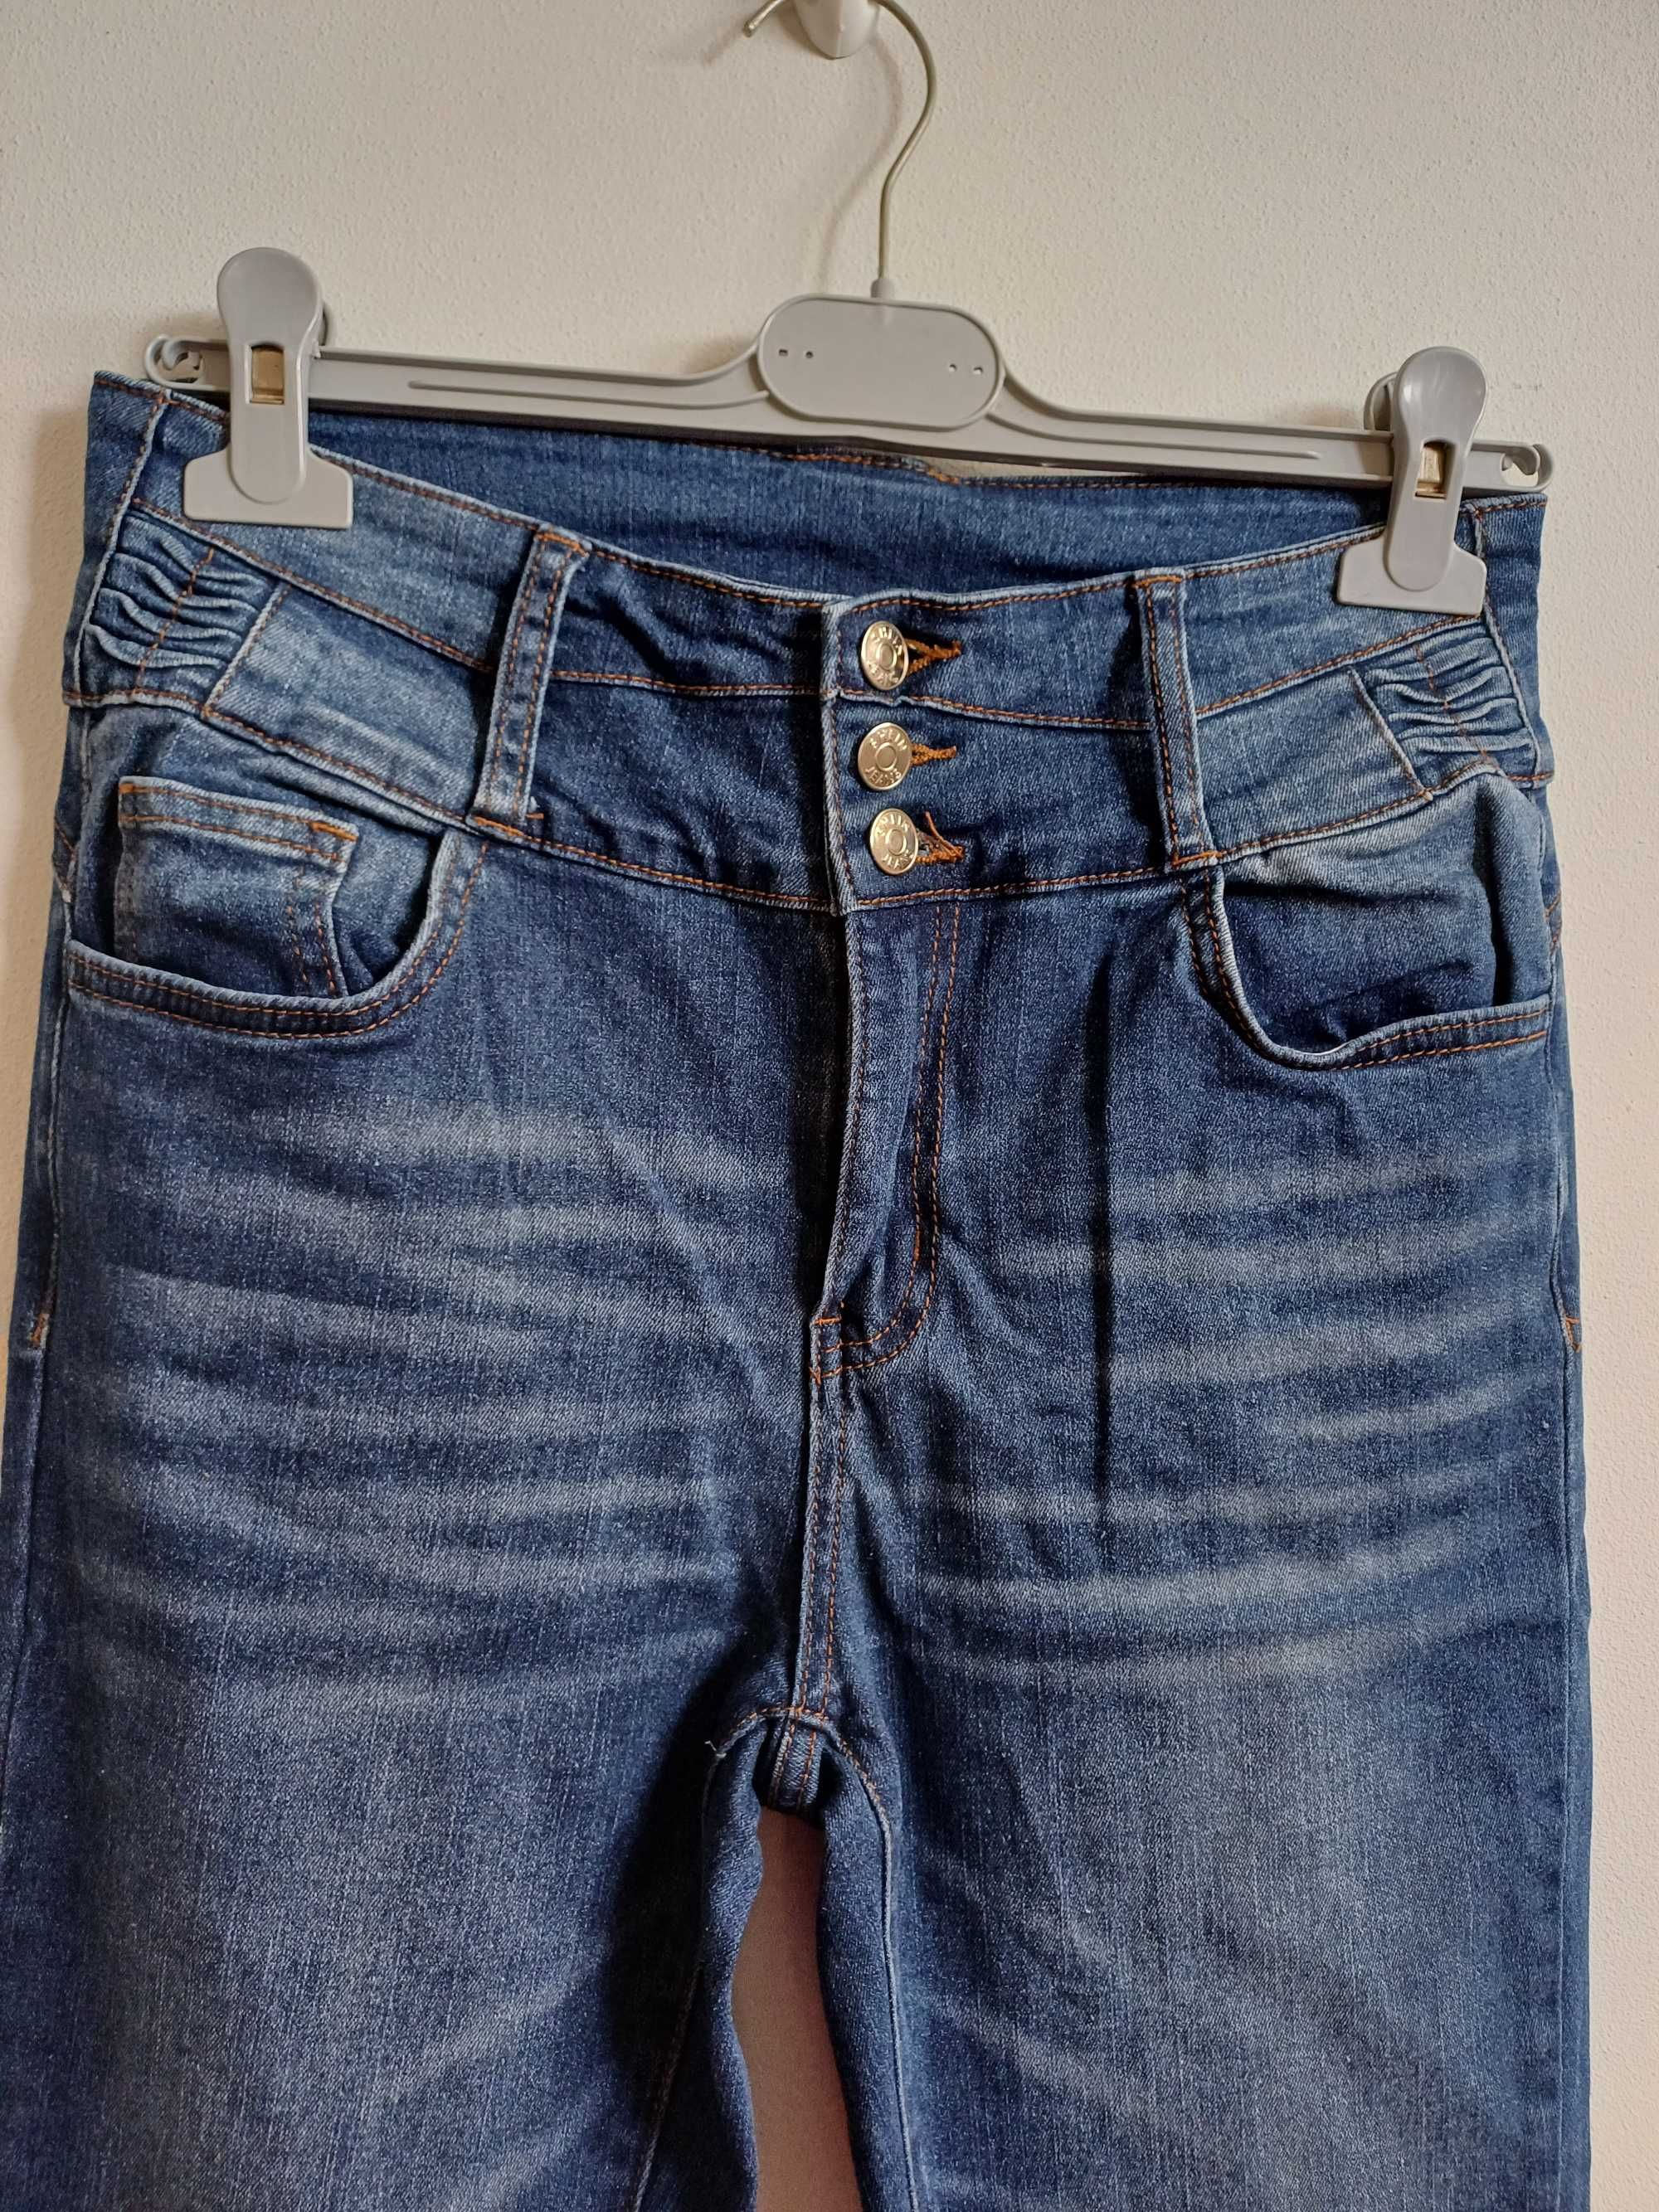 Spodnie jeansy, dżinsy rurki damskie r. M/L